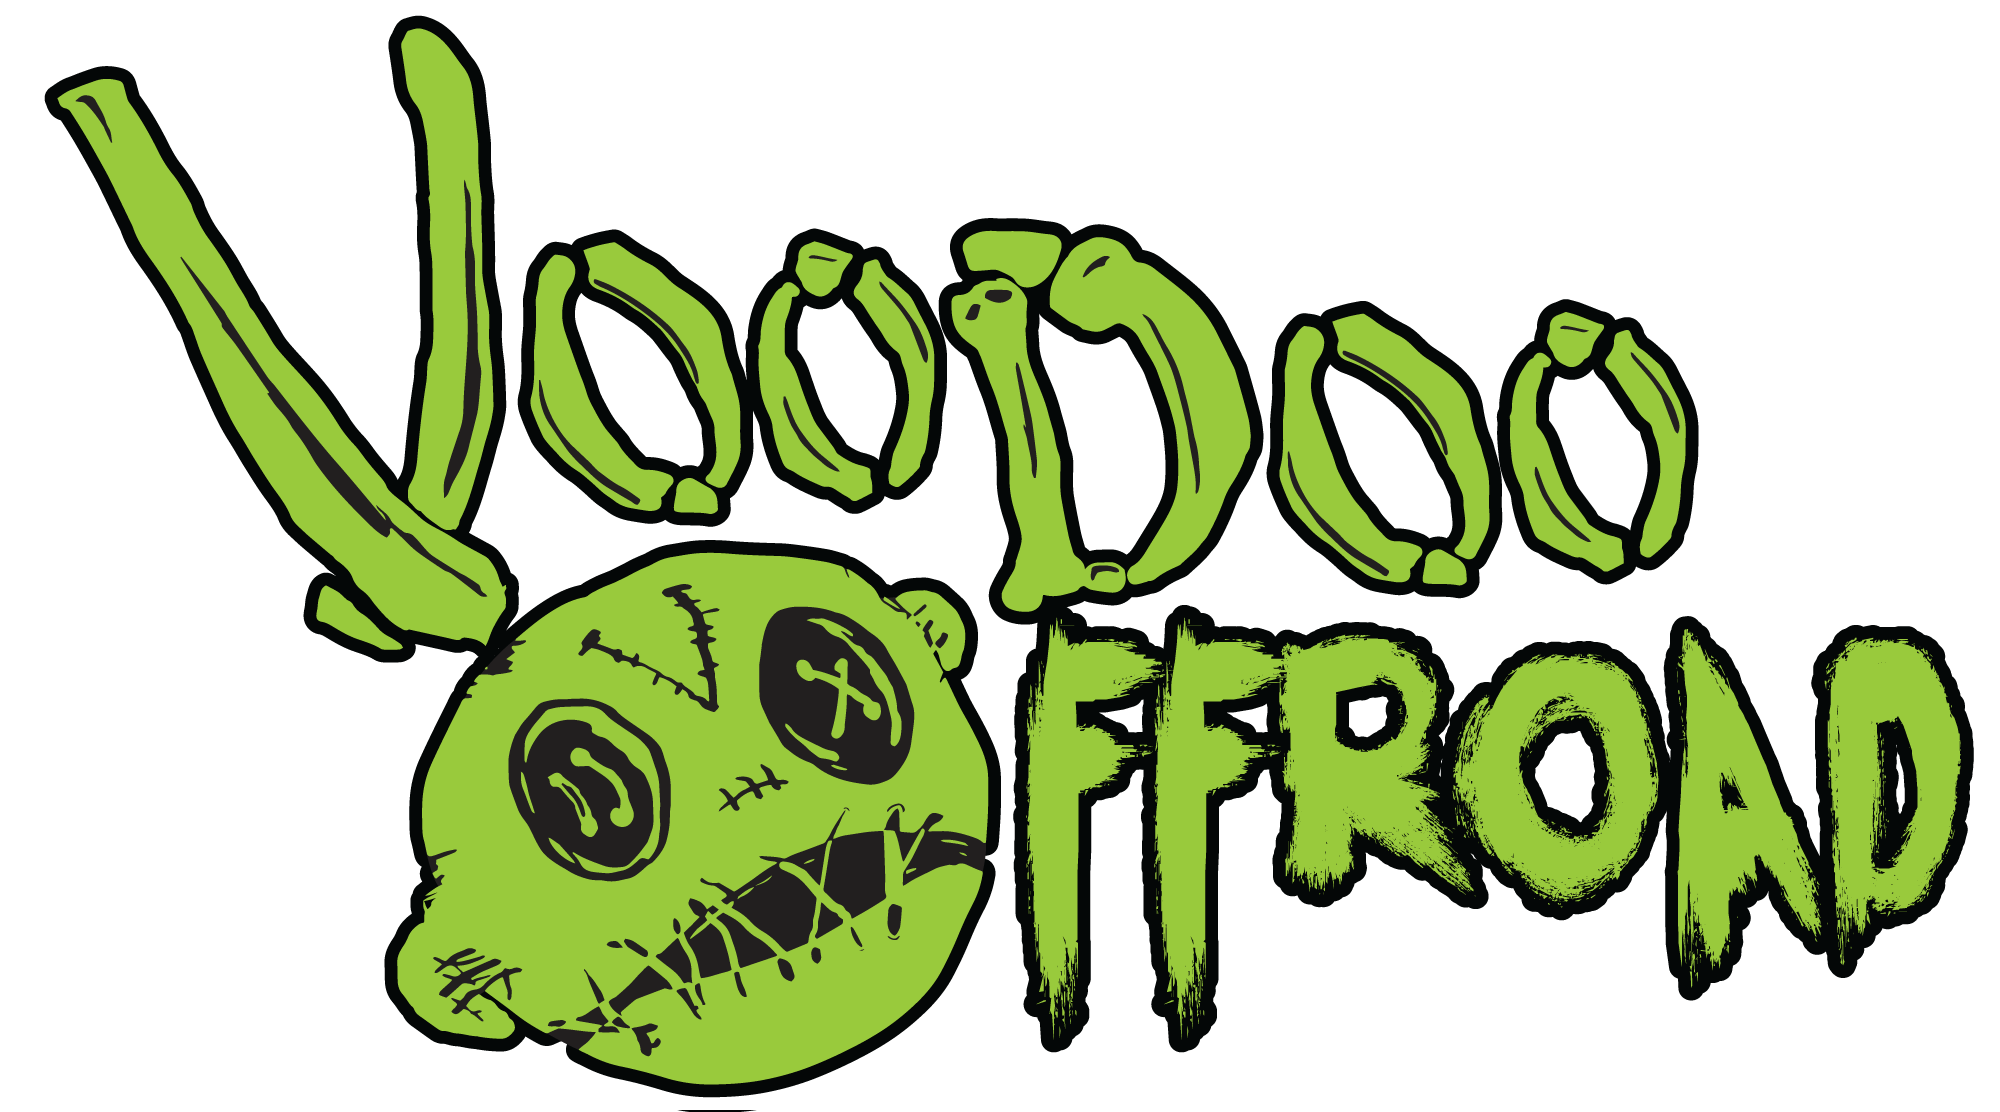 VooDoo Offroad Logo   